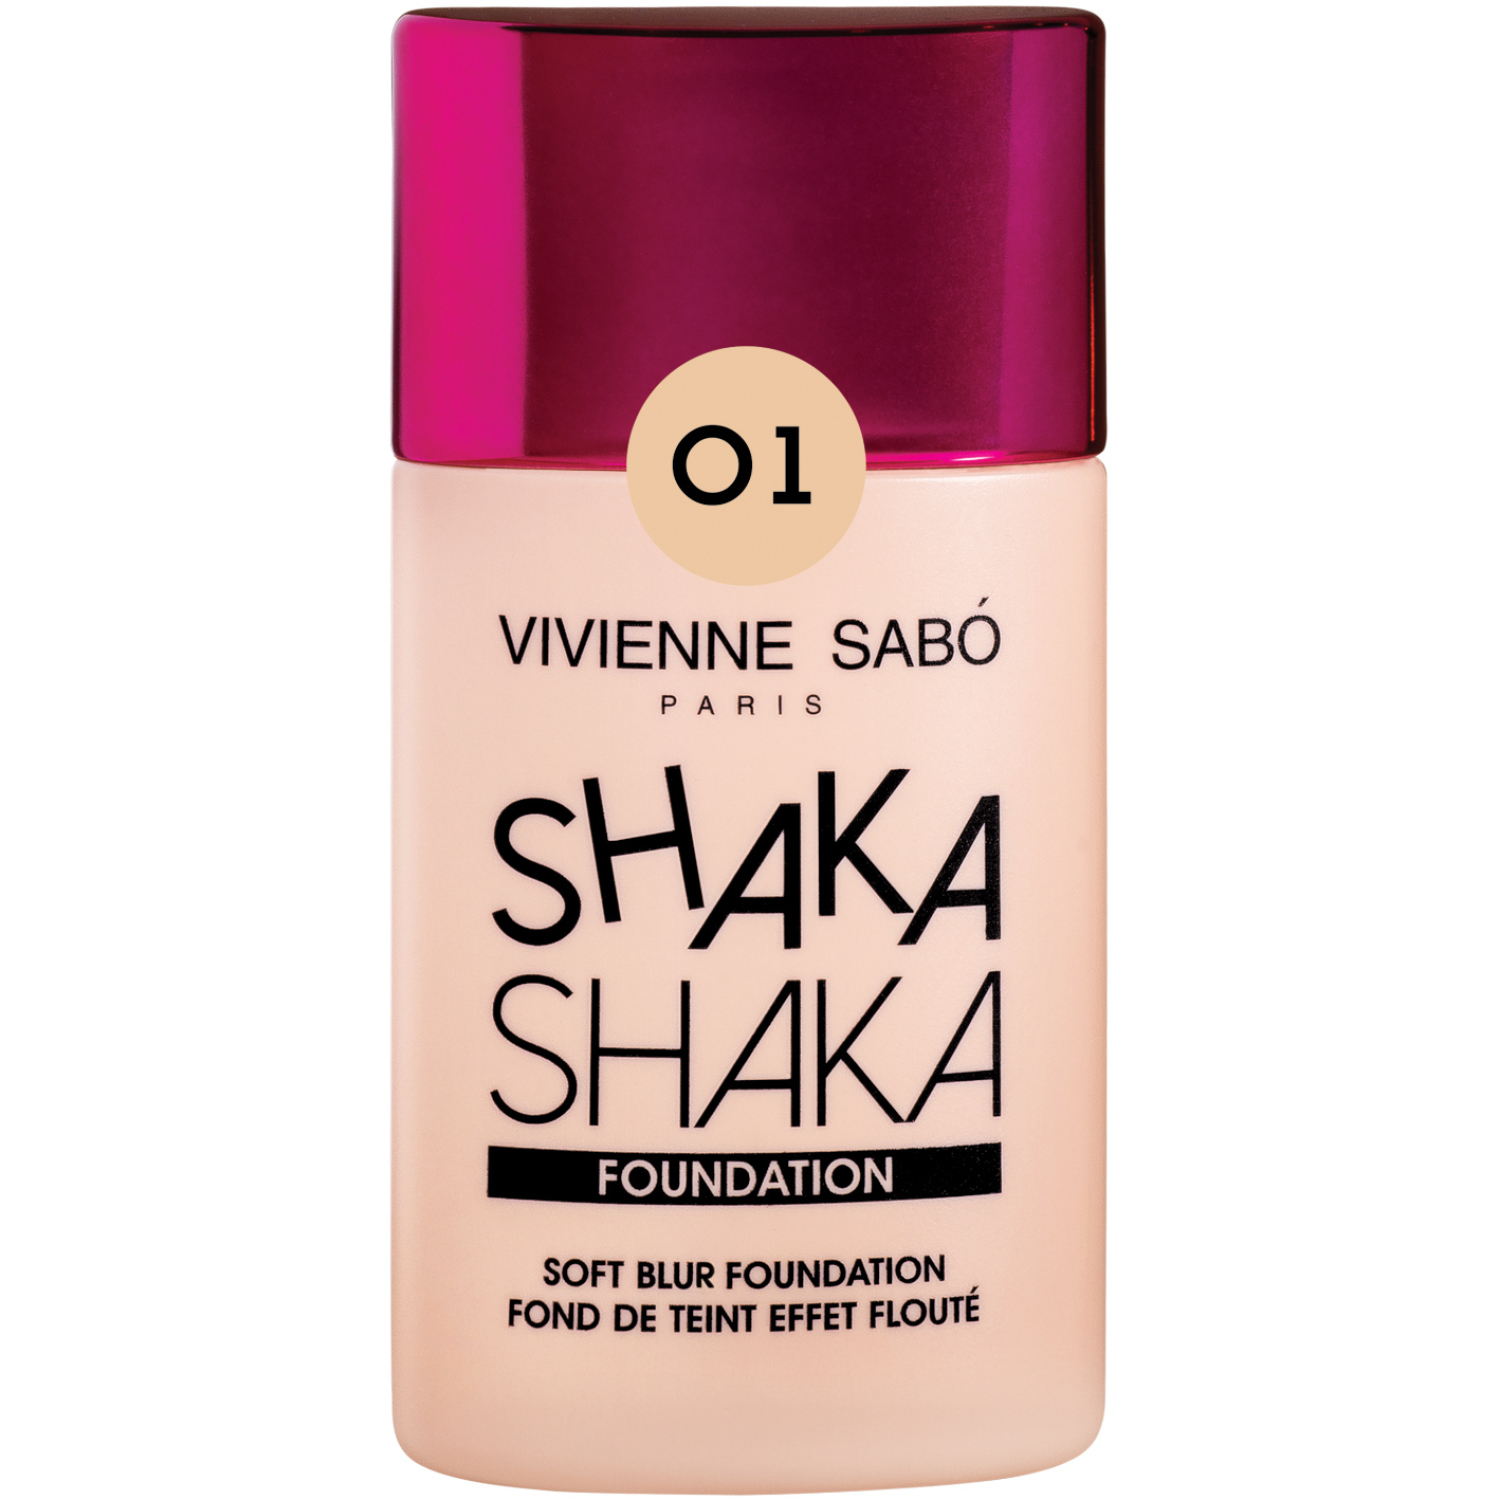 Тональный крем Vivienne Sabo Shaka Shaka, крем-флюид  с натуральным блюр-эффектом, тон 01, светло-бежевый, 25мл